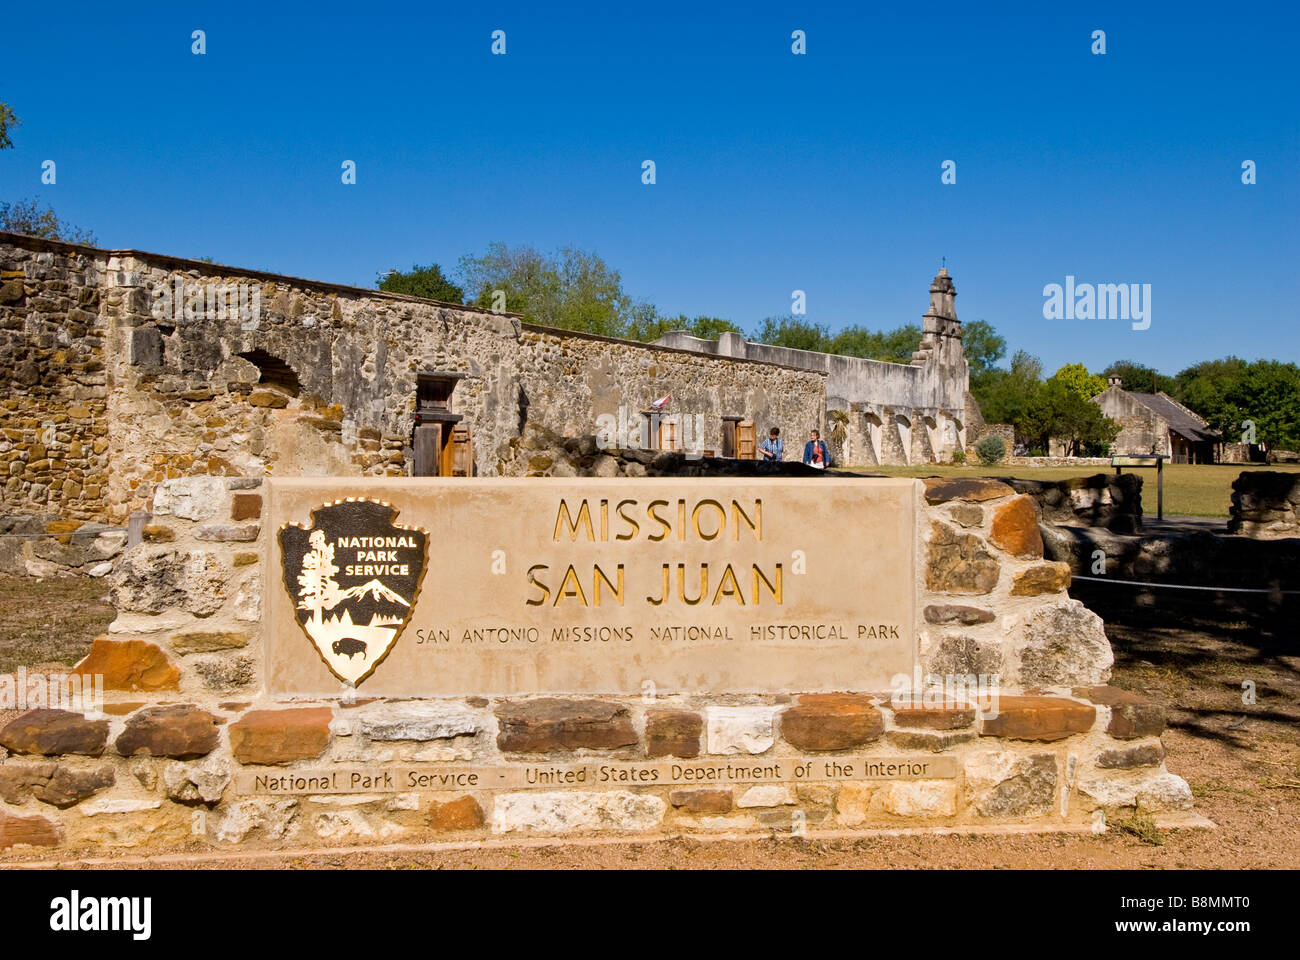 La mission de San Juan panneau d'entrée San Antonio missions National Historical Park us national park service destination touristique Banque D'Images